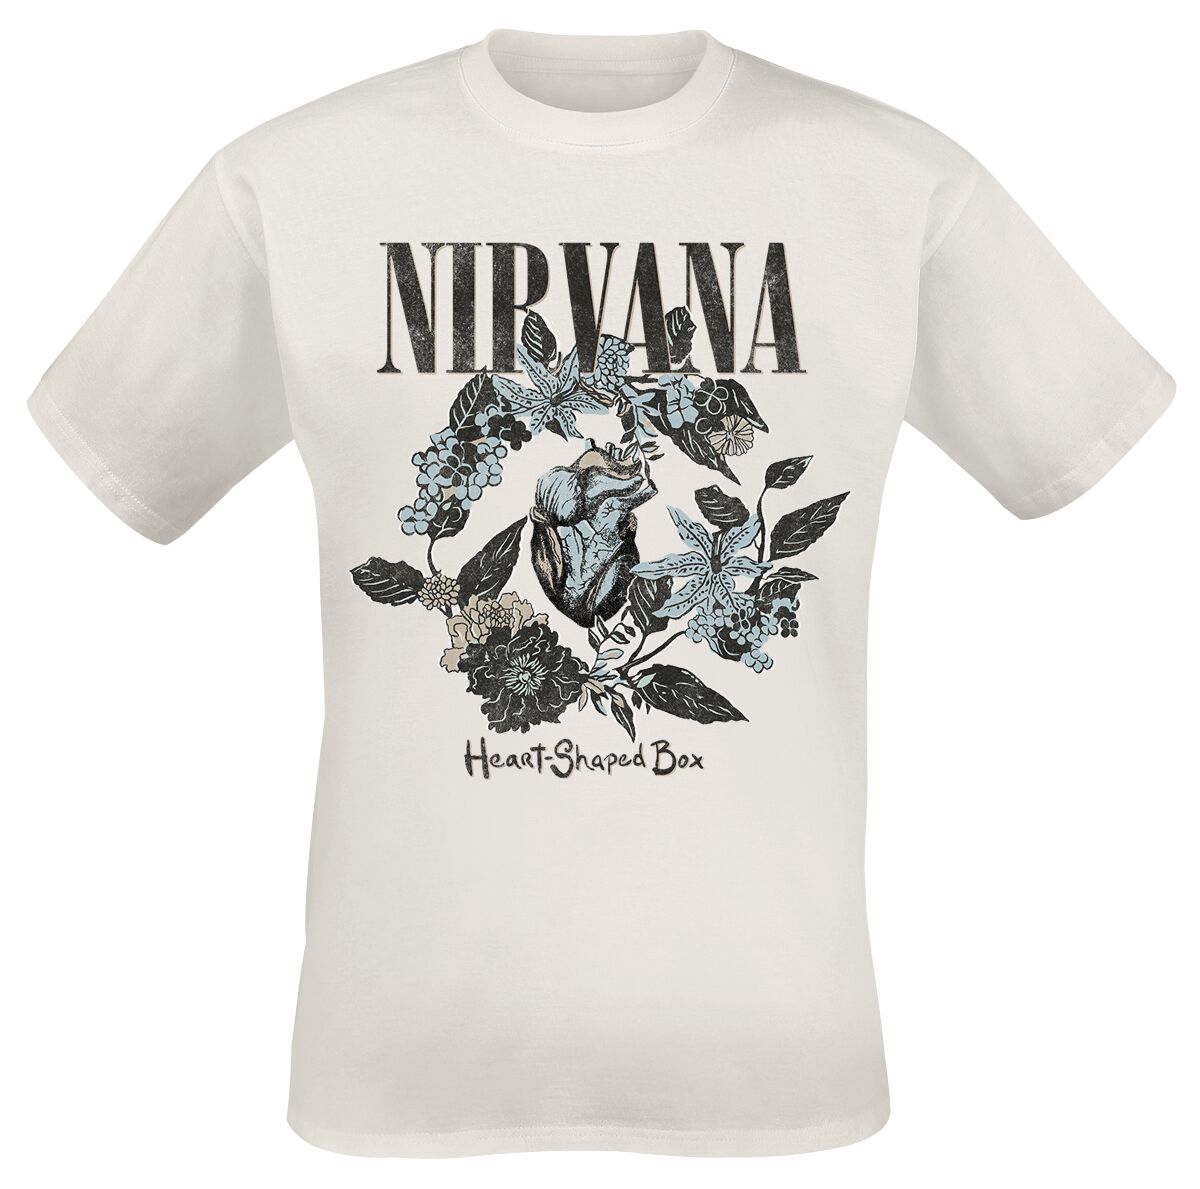 Nirvana T-Shirt - Heart Shape Box - S bis 3XL - für Männer - Größe 3XL - weiß  - Lizenziertes Merchandise!